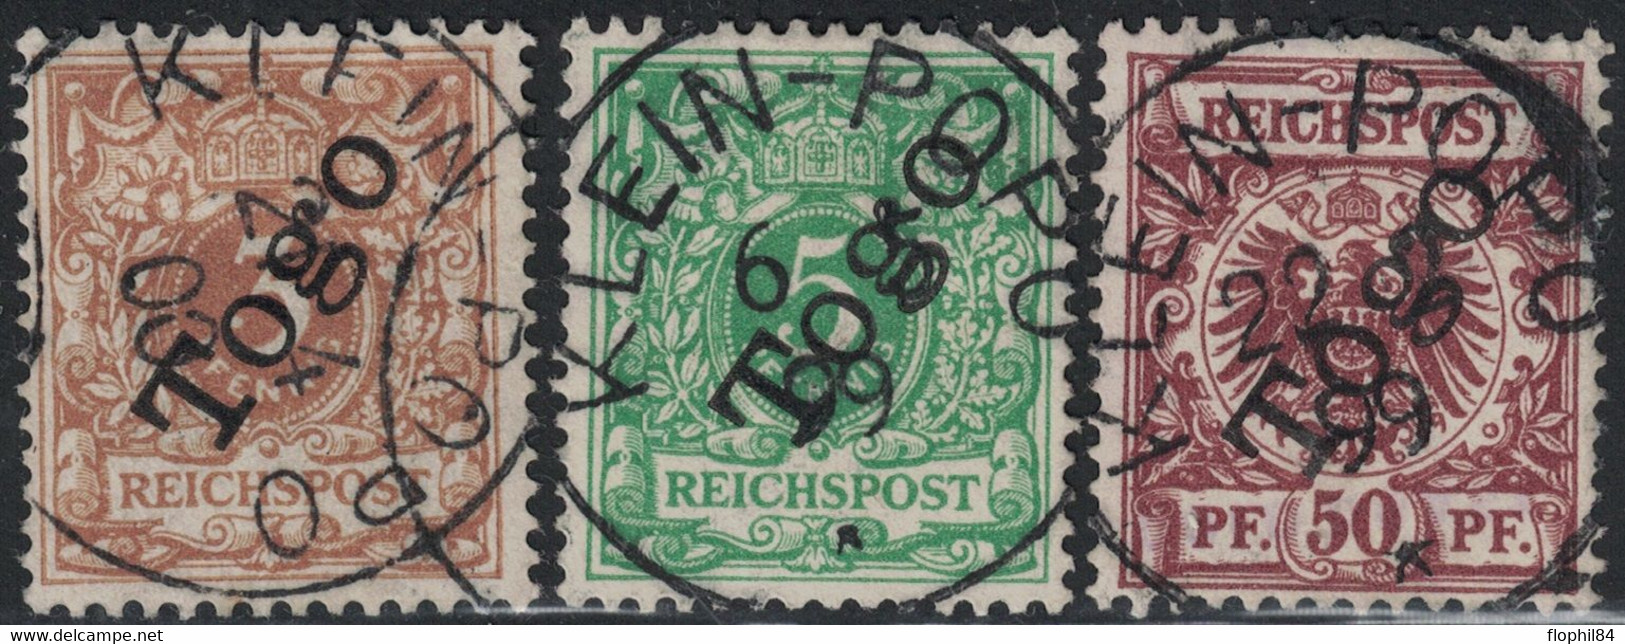 TOGO - N°1-2 ET 6 -  TOUS AVEC CACHET KLEIN-POPO - COTE 105€. - Used Stamps